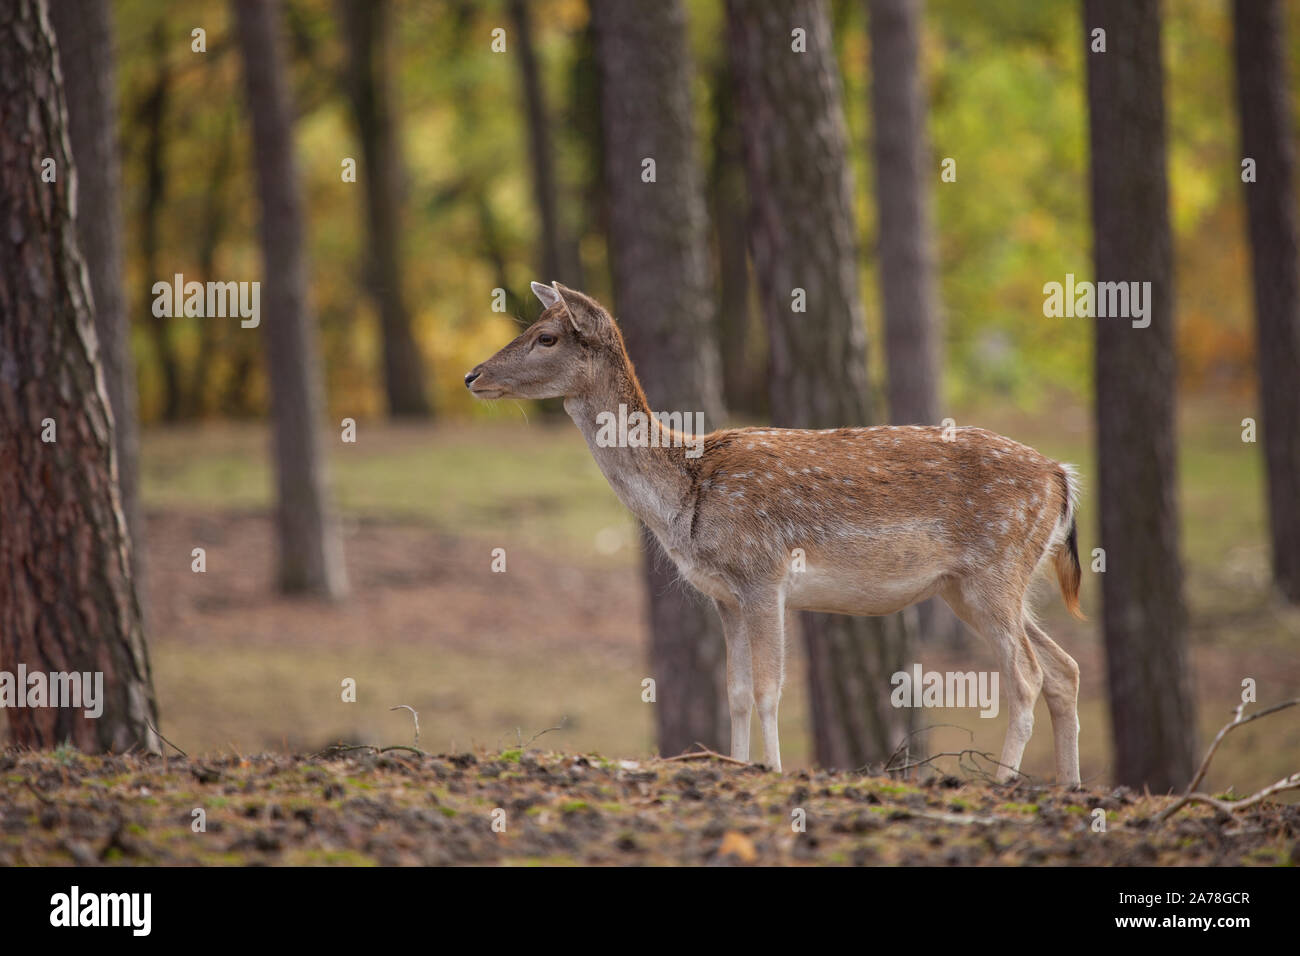 Damtier, fallow deer Stock Photo